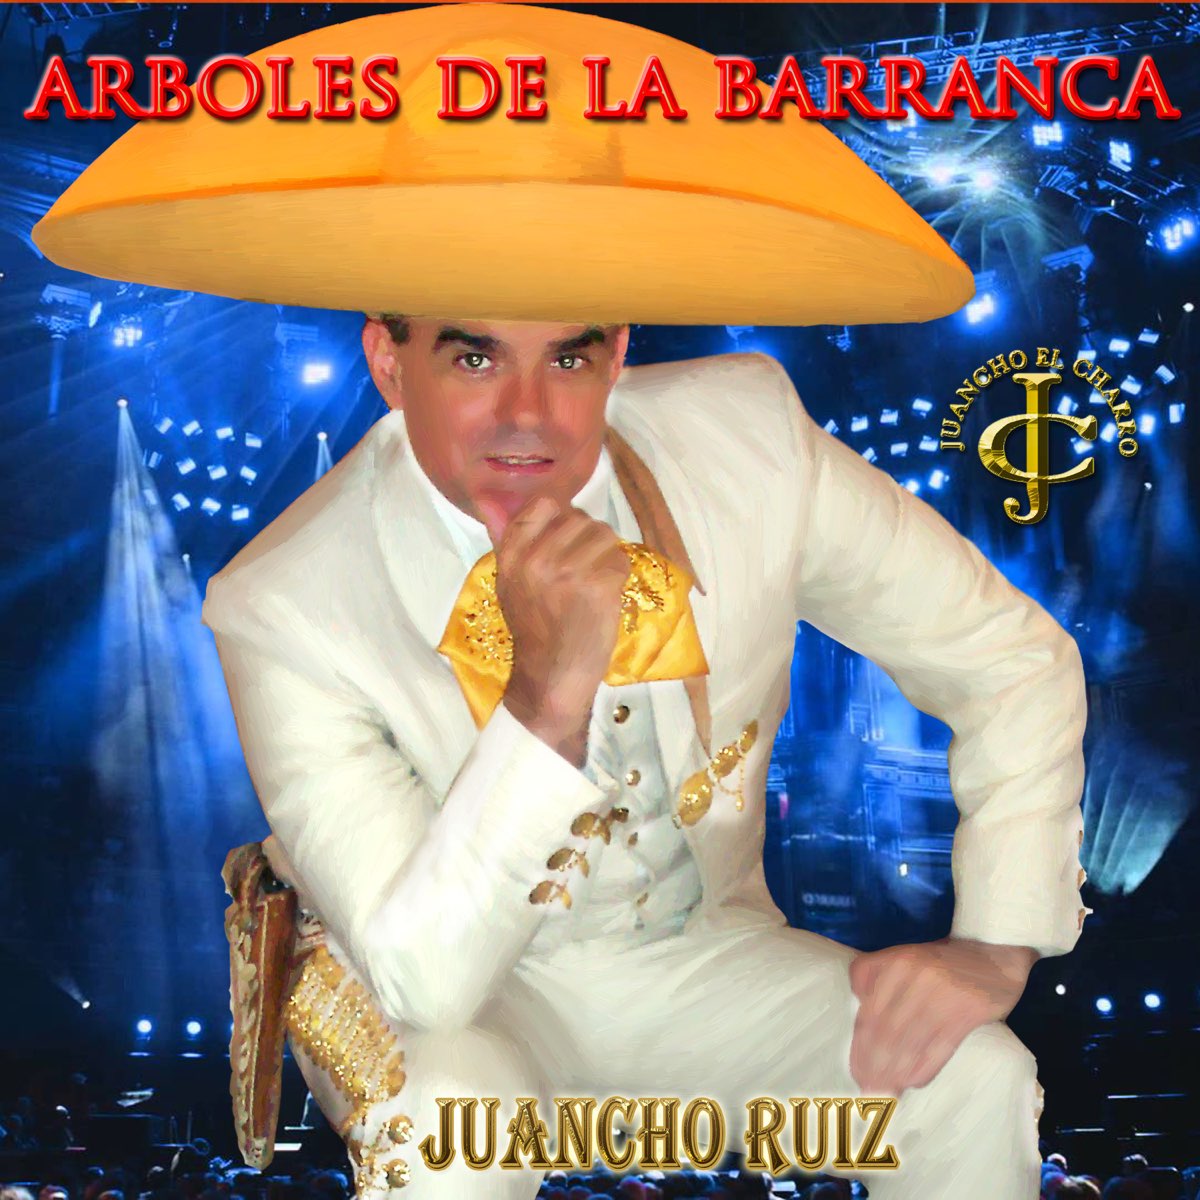 Árboles de la barranca (feat. Ruben Muñoz & Isabel Pineda) - Single de  Juancho Ruiz (El Charro) en Apple Music